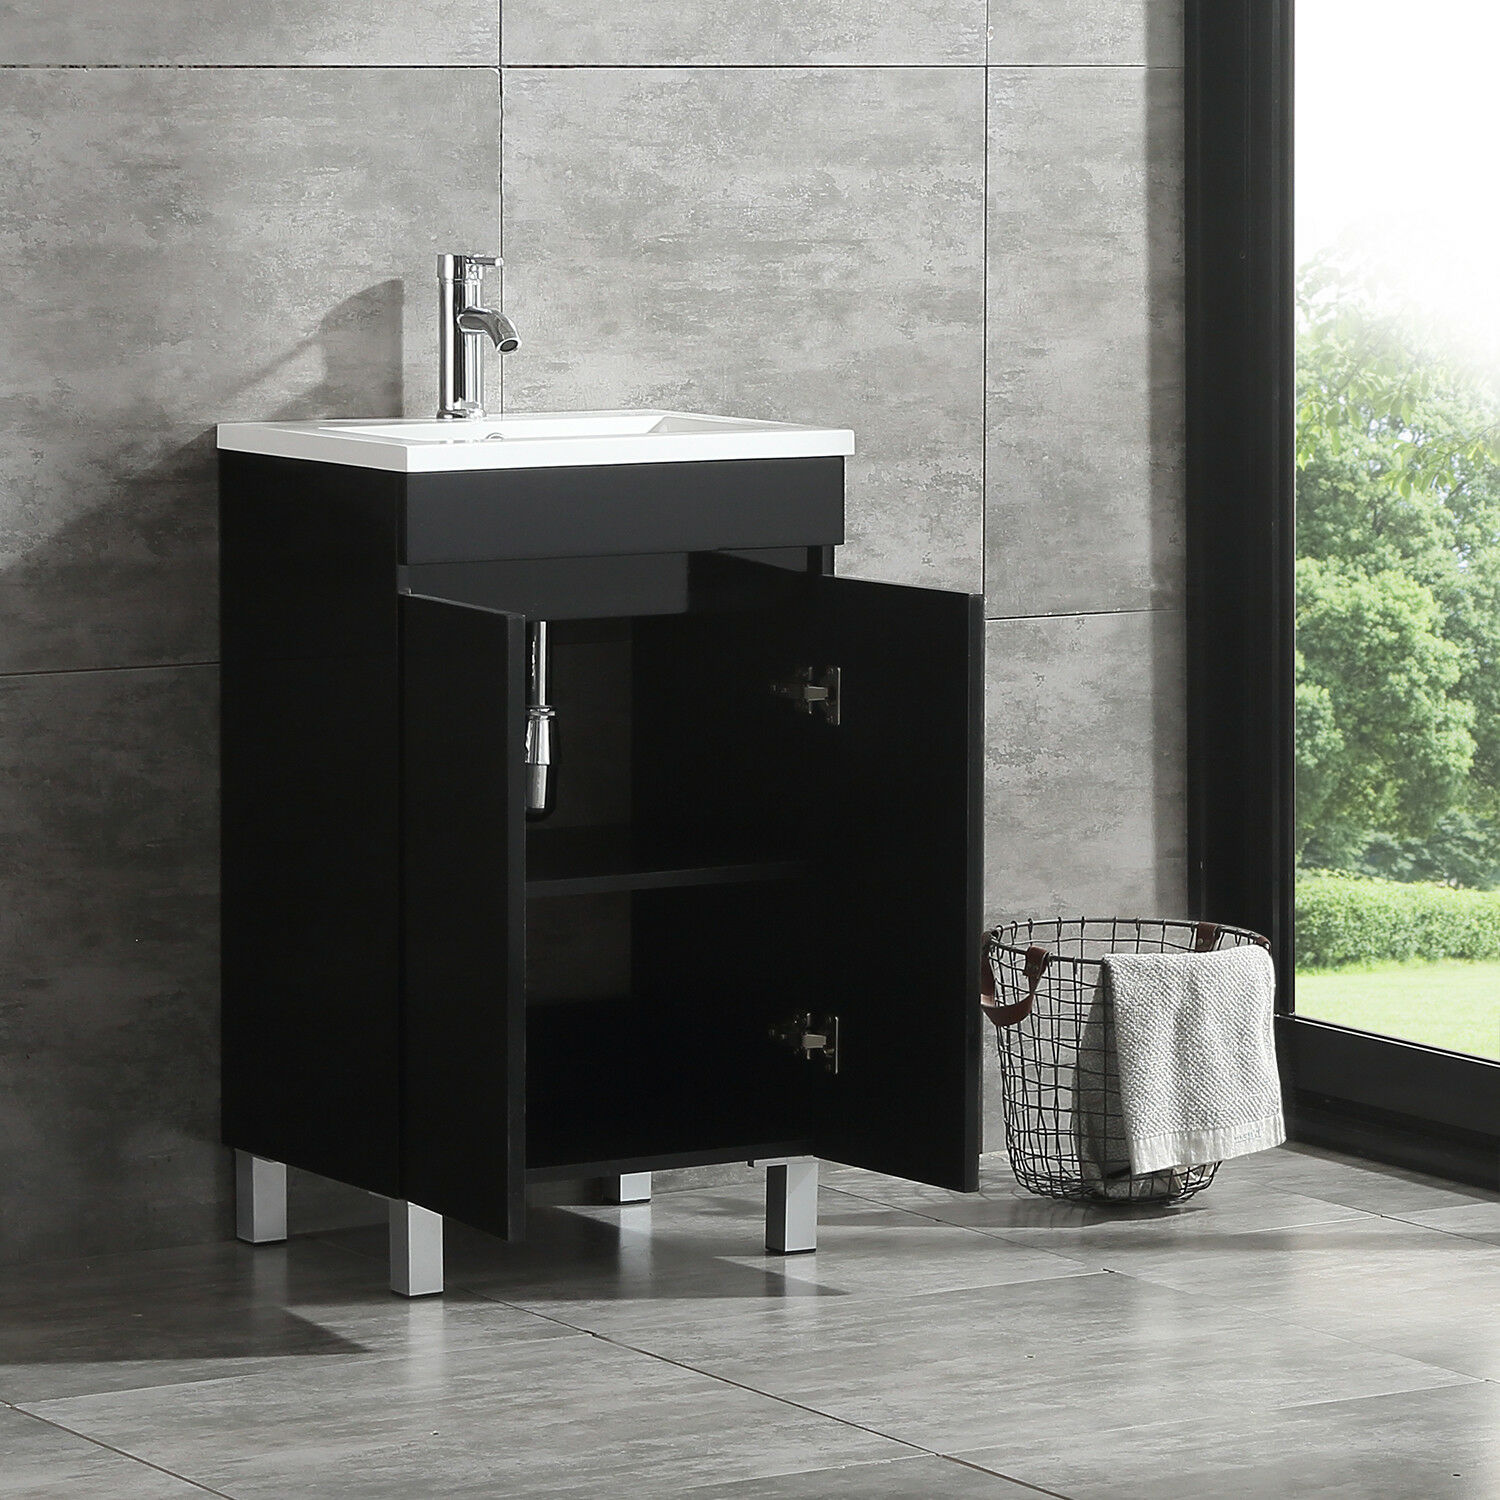 Buy Walcut Black Bathroom Vanity Cabinet Wood Storage With Undermount Vessel Sink Faucet Us Online In Indonesia 360226752